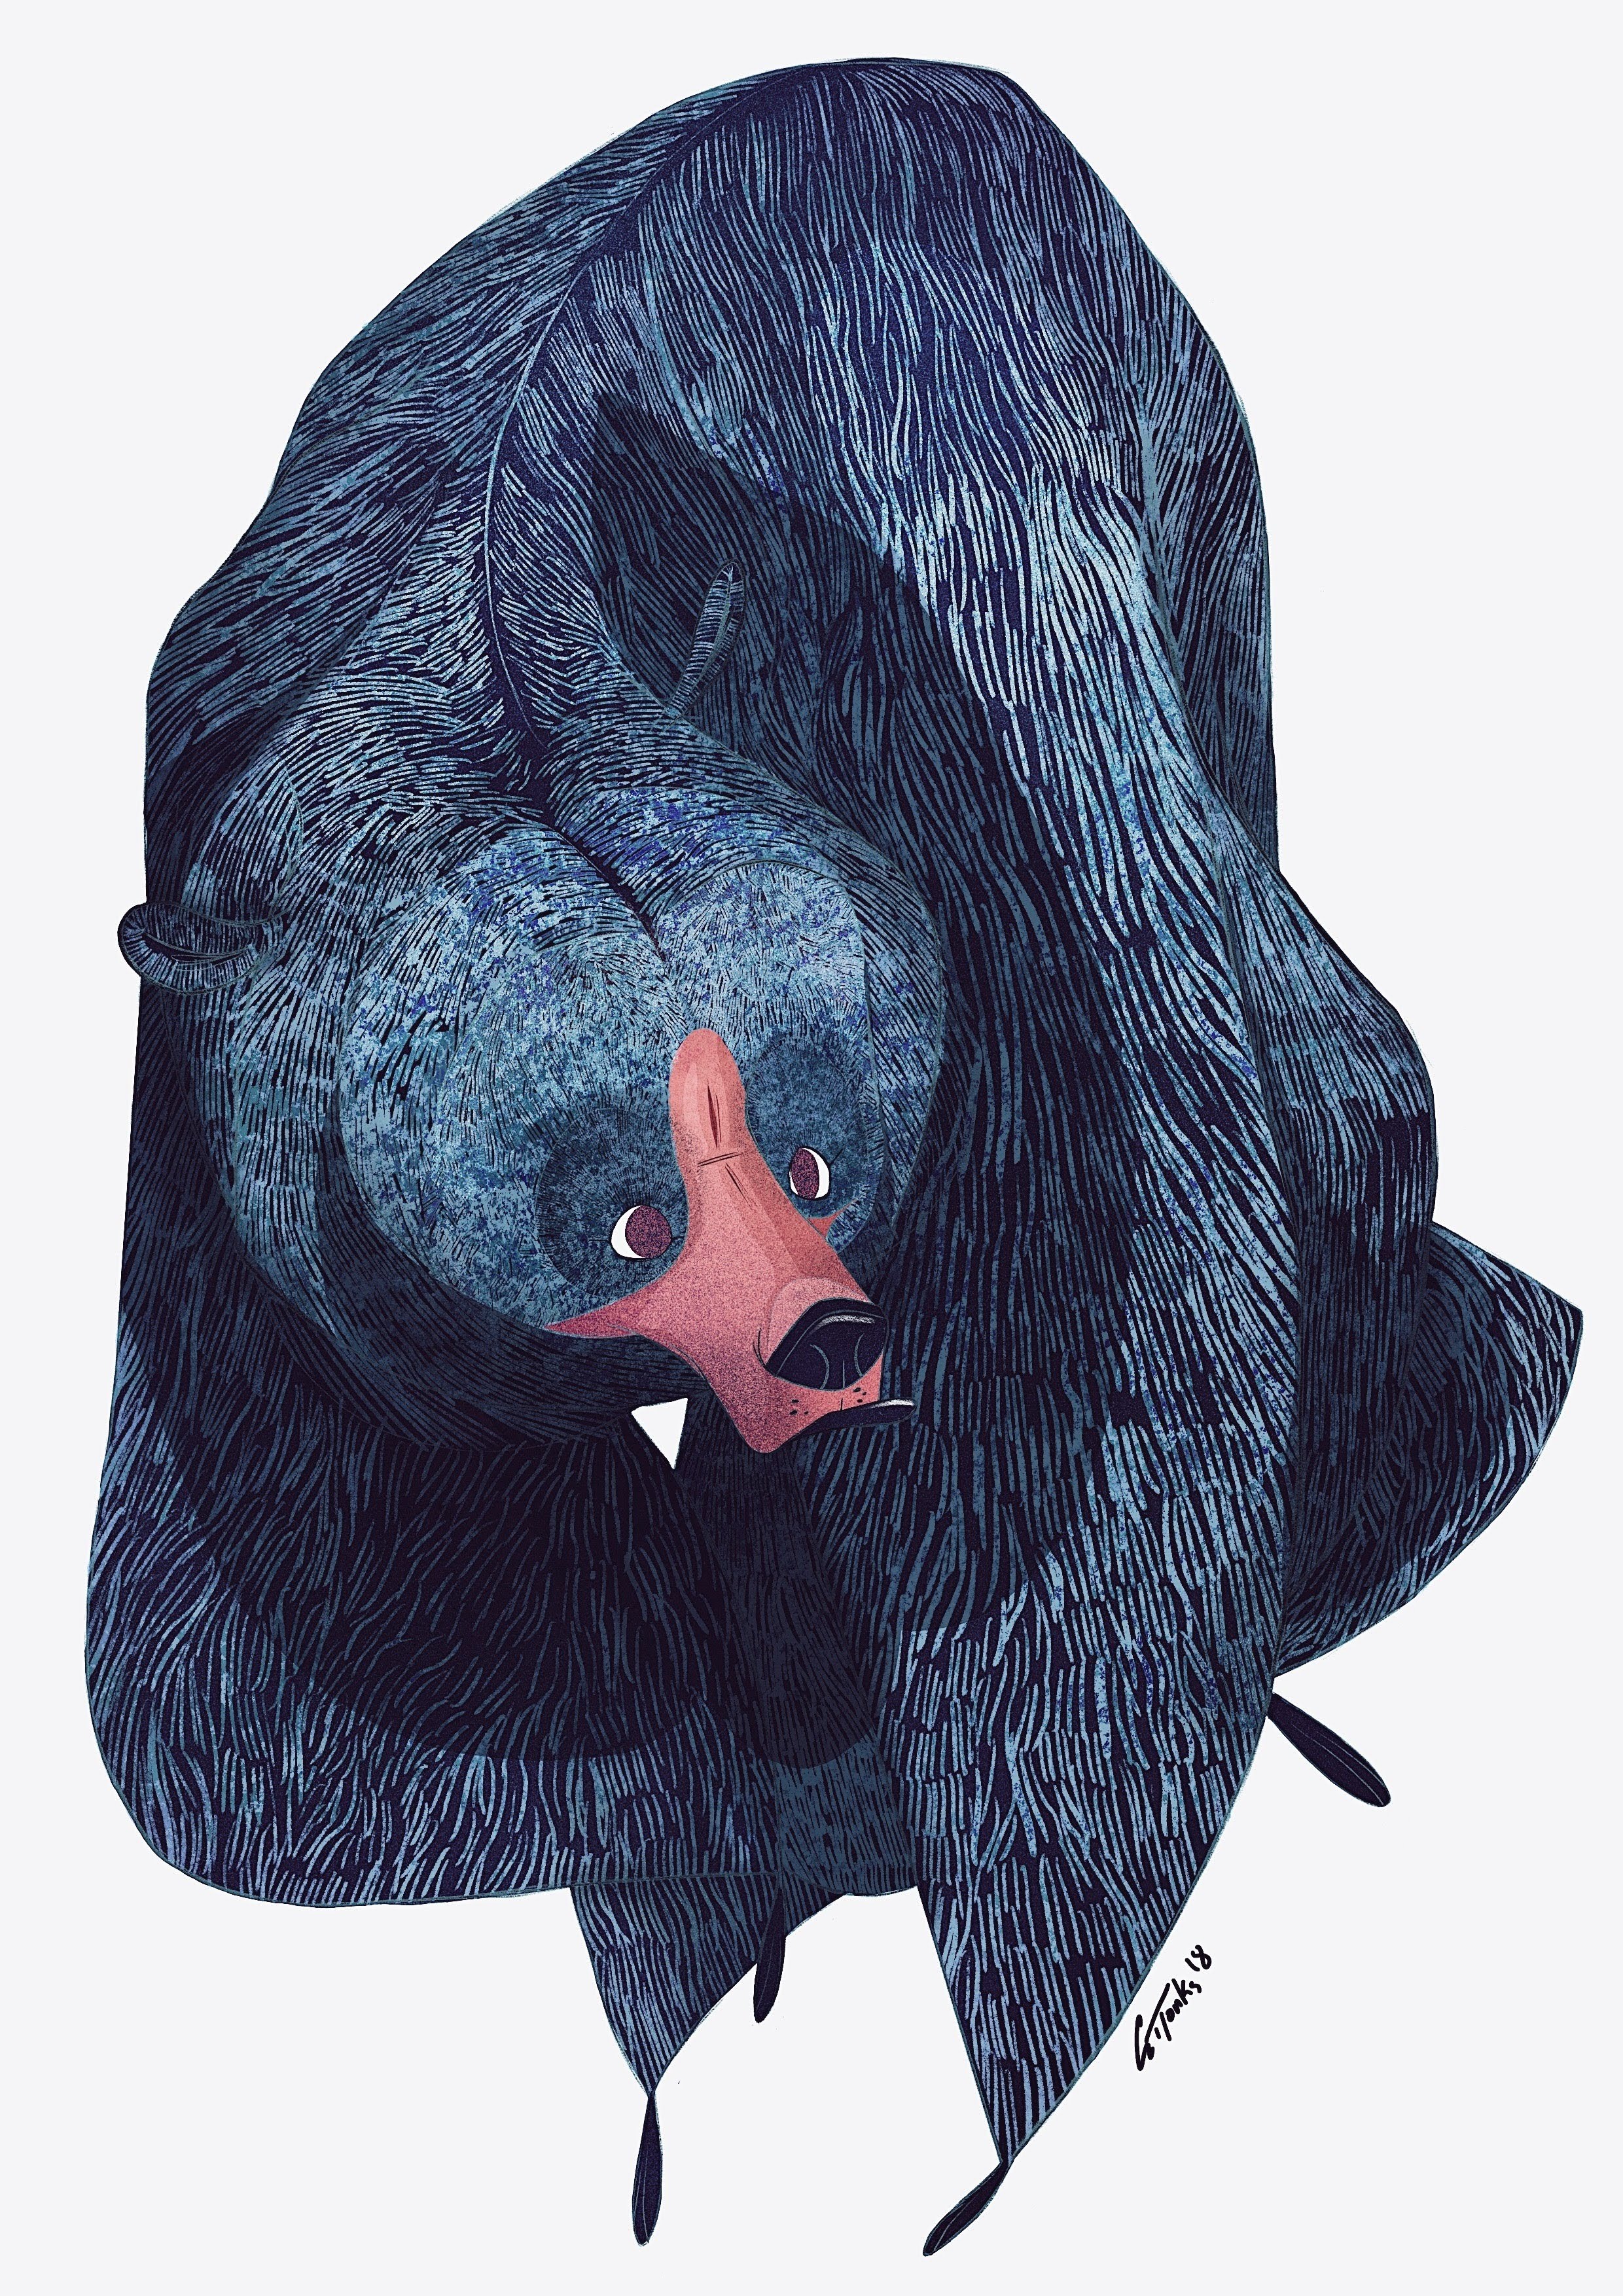 bear illustration george tonks 